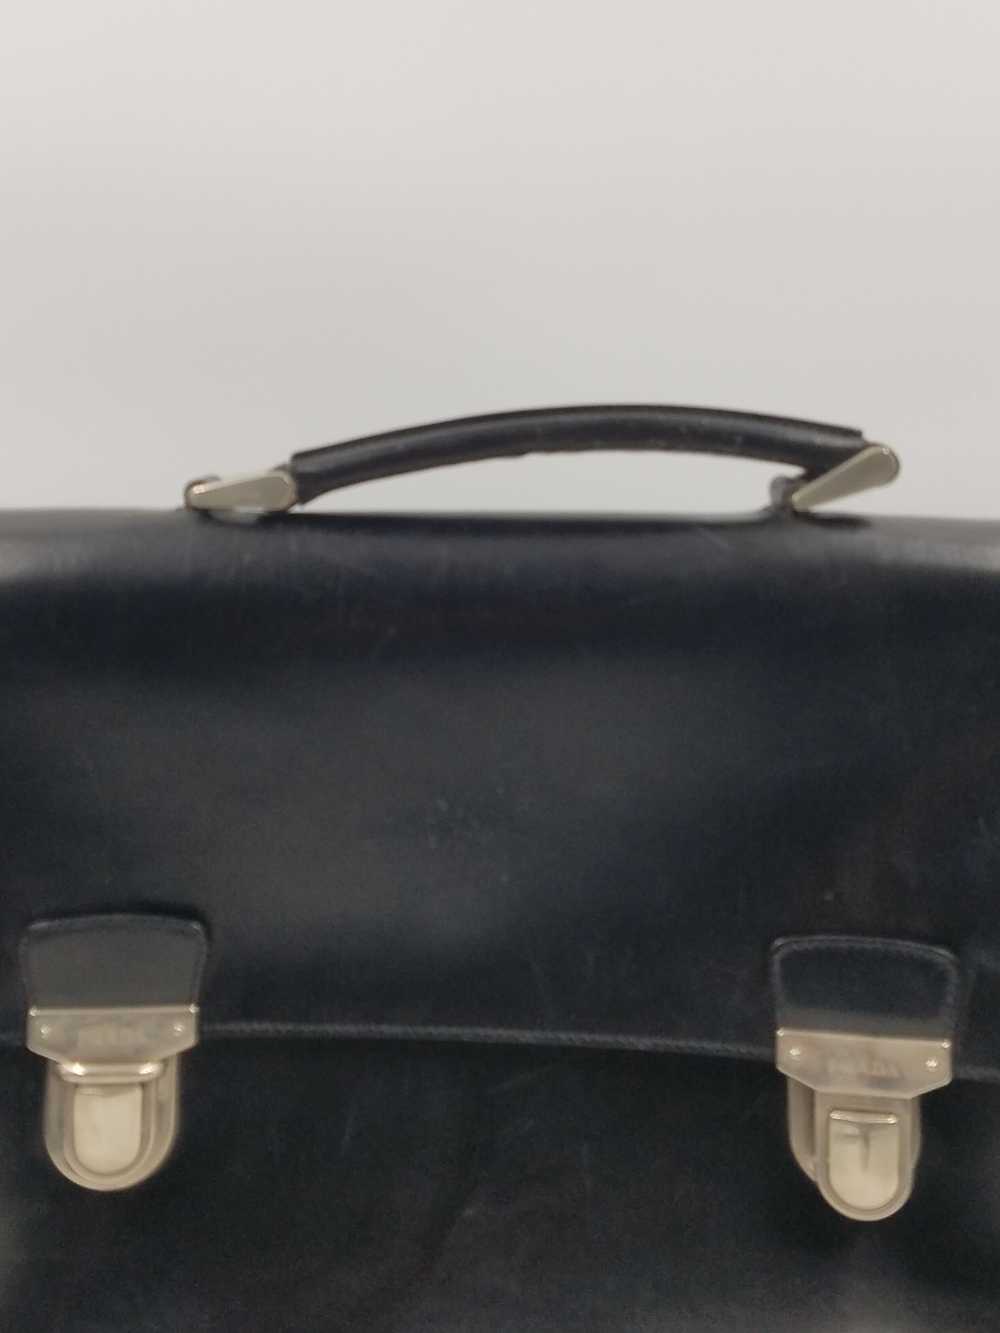 Authentic Prada Black Leather Briefcase - image 7